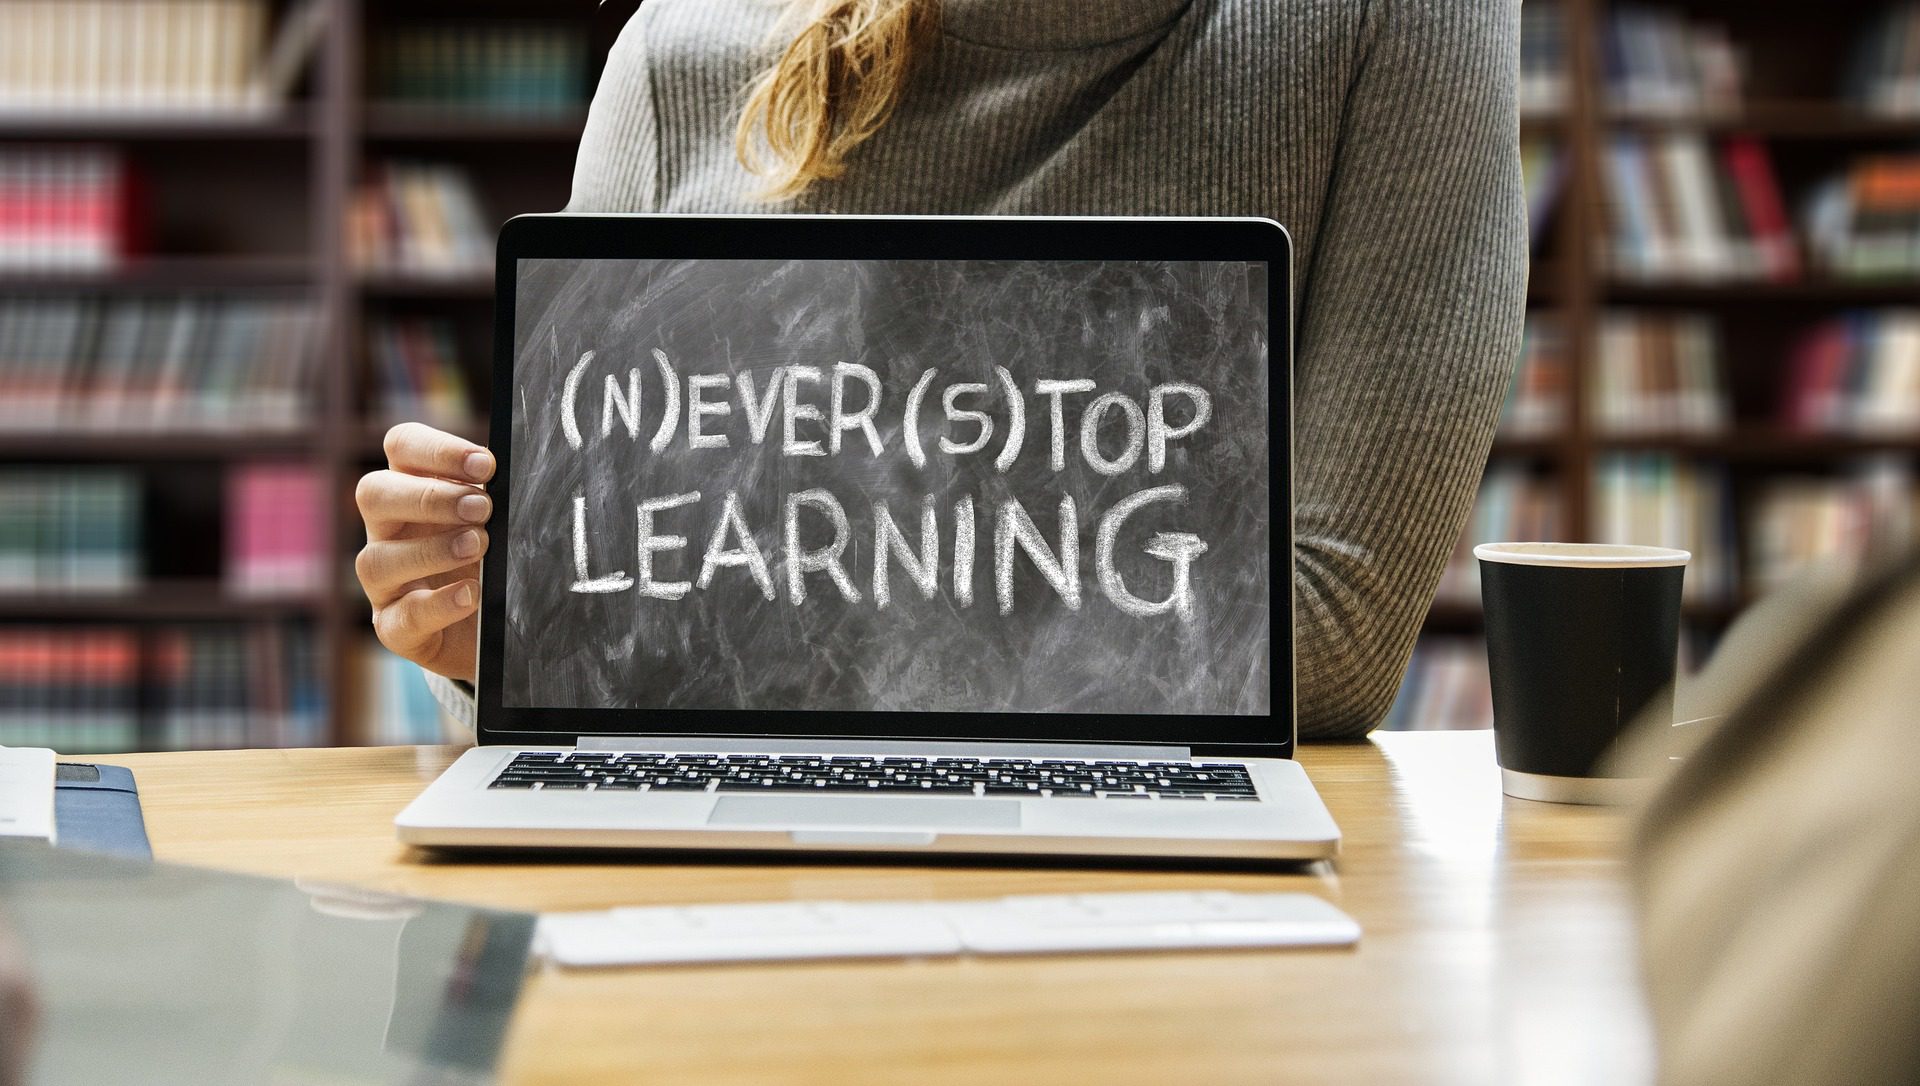 Laptop, der wie eine Kreidetafel aussieht, auf der "Never Stop Learning" mit N und S in Klammern steht